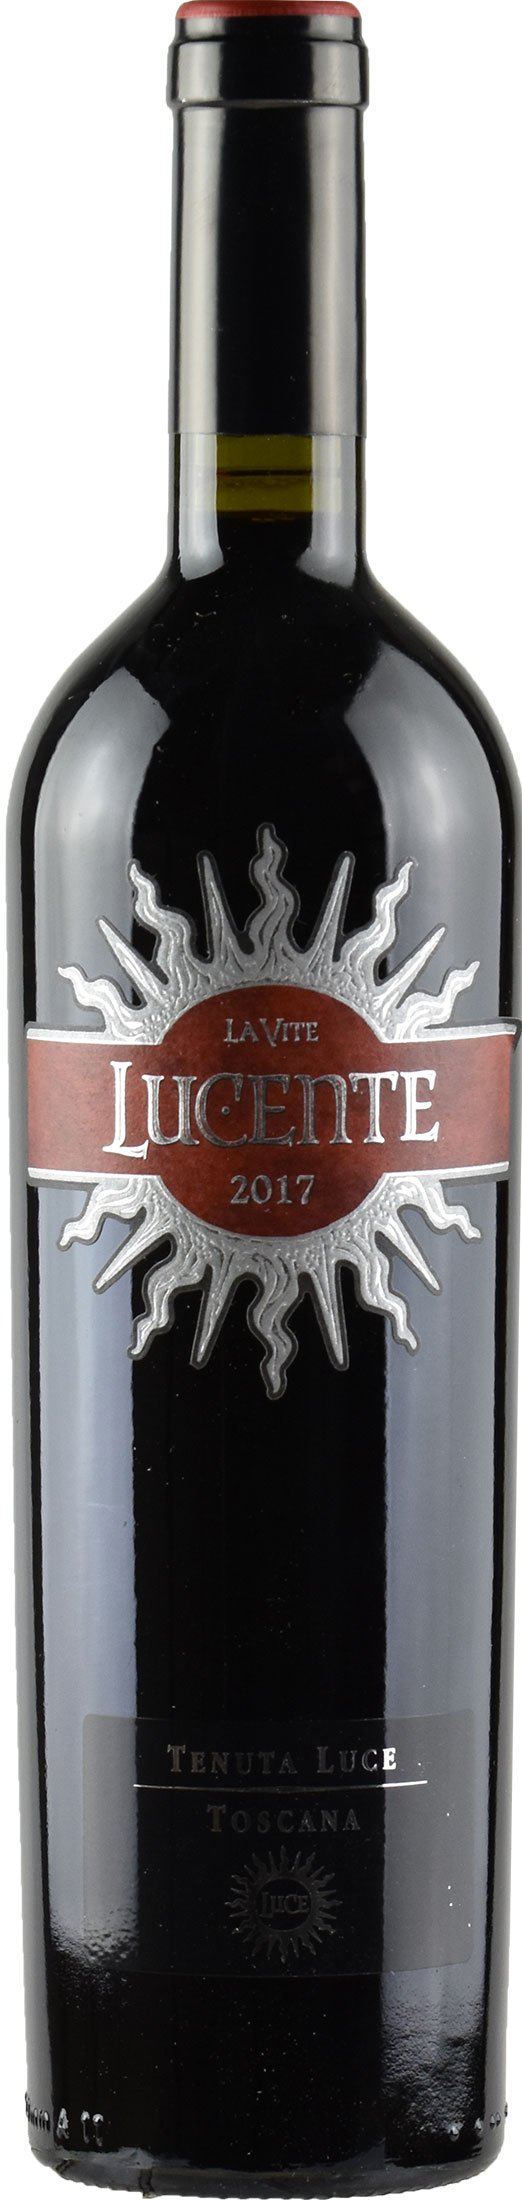 Lucente Toscana 2017